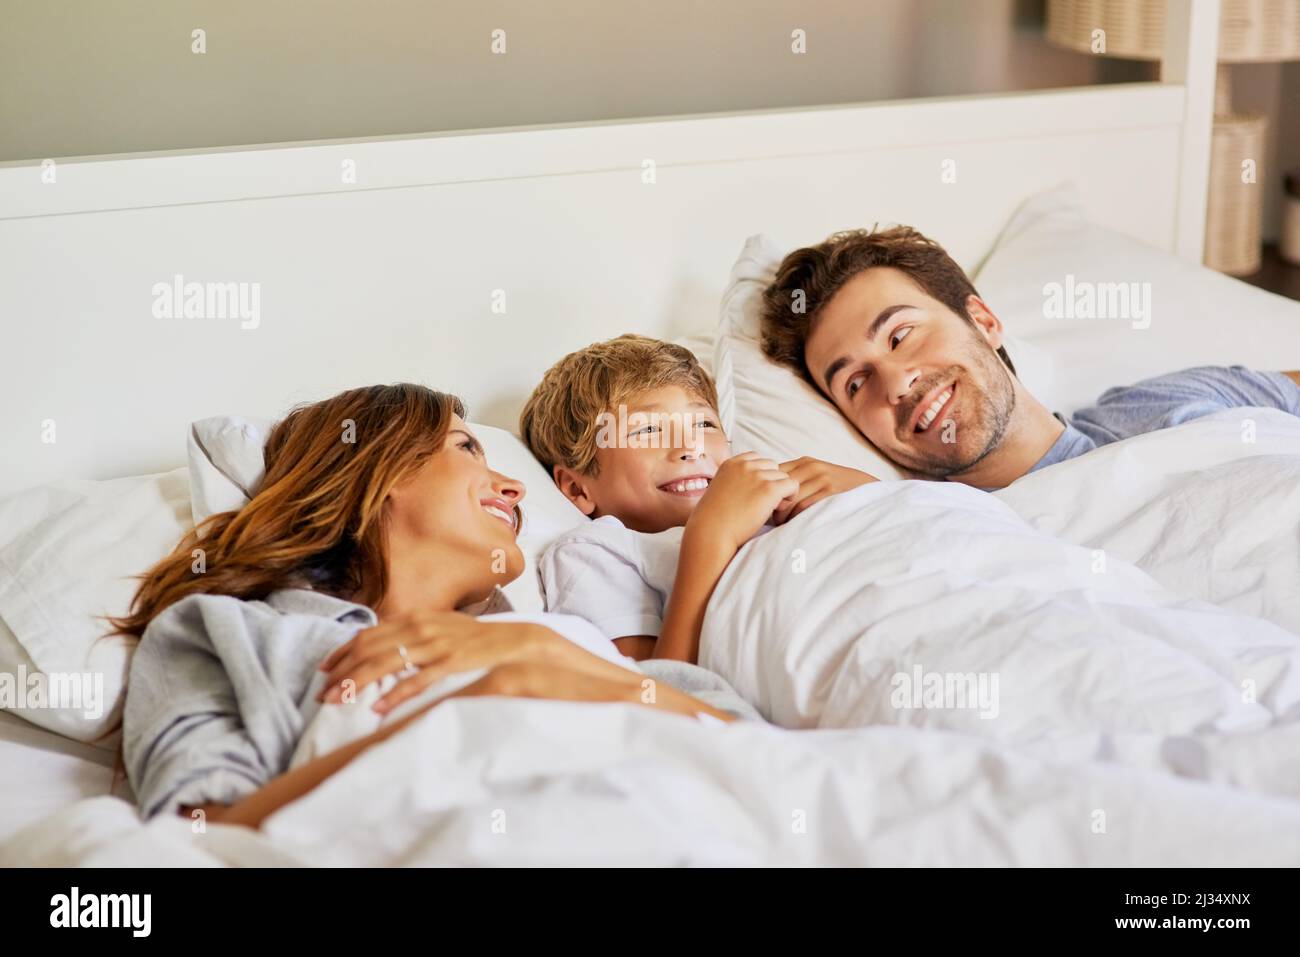 Zeit für die Familie am Morgen. Aufnahme einer fröhlichen jungen Familie, die tagsüber im Bett zu Hause relaxt. Stockfoto